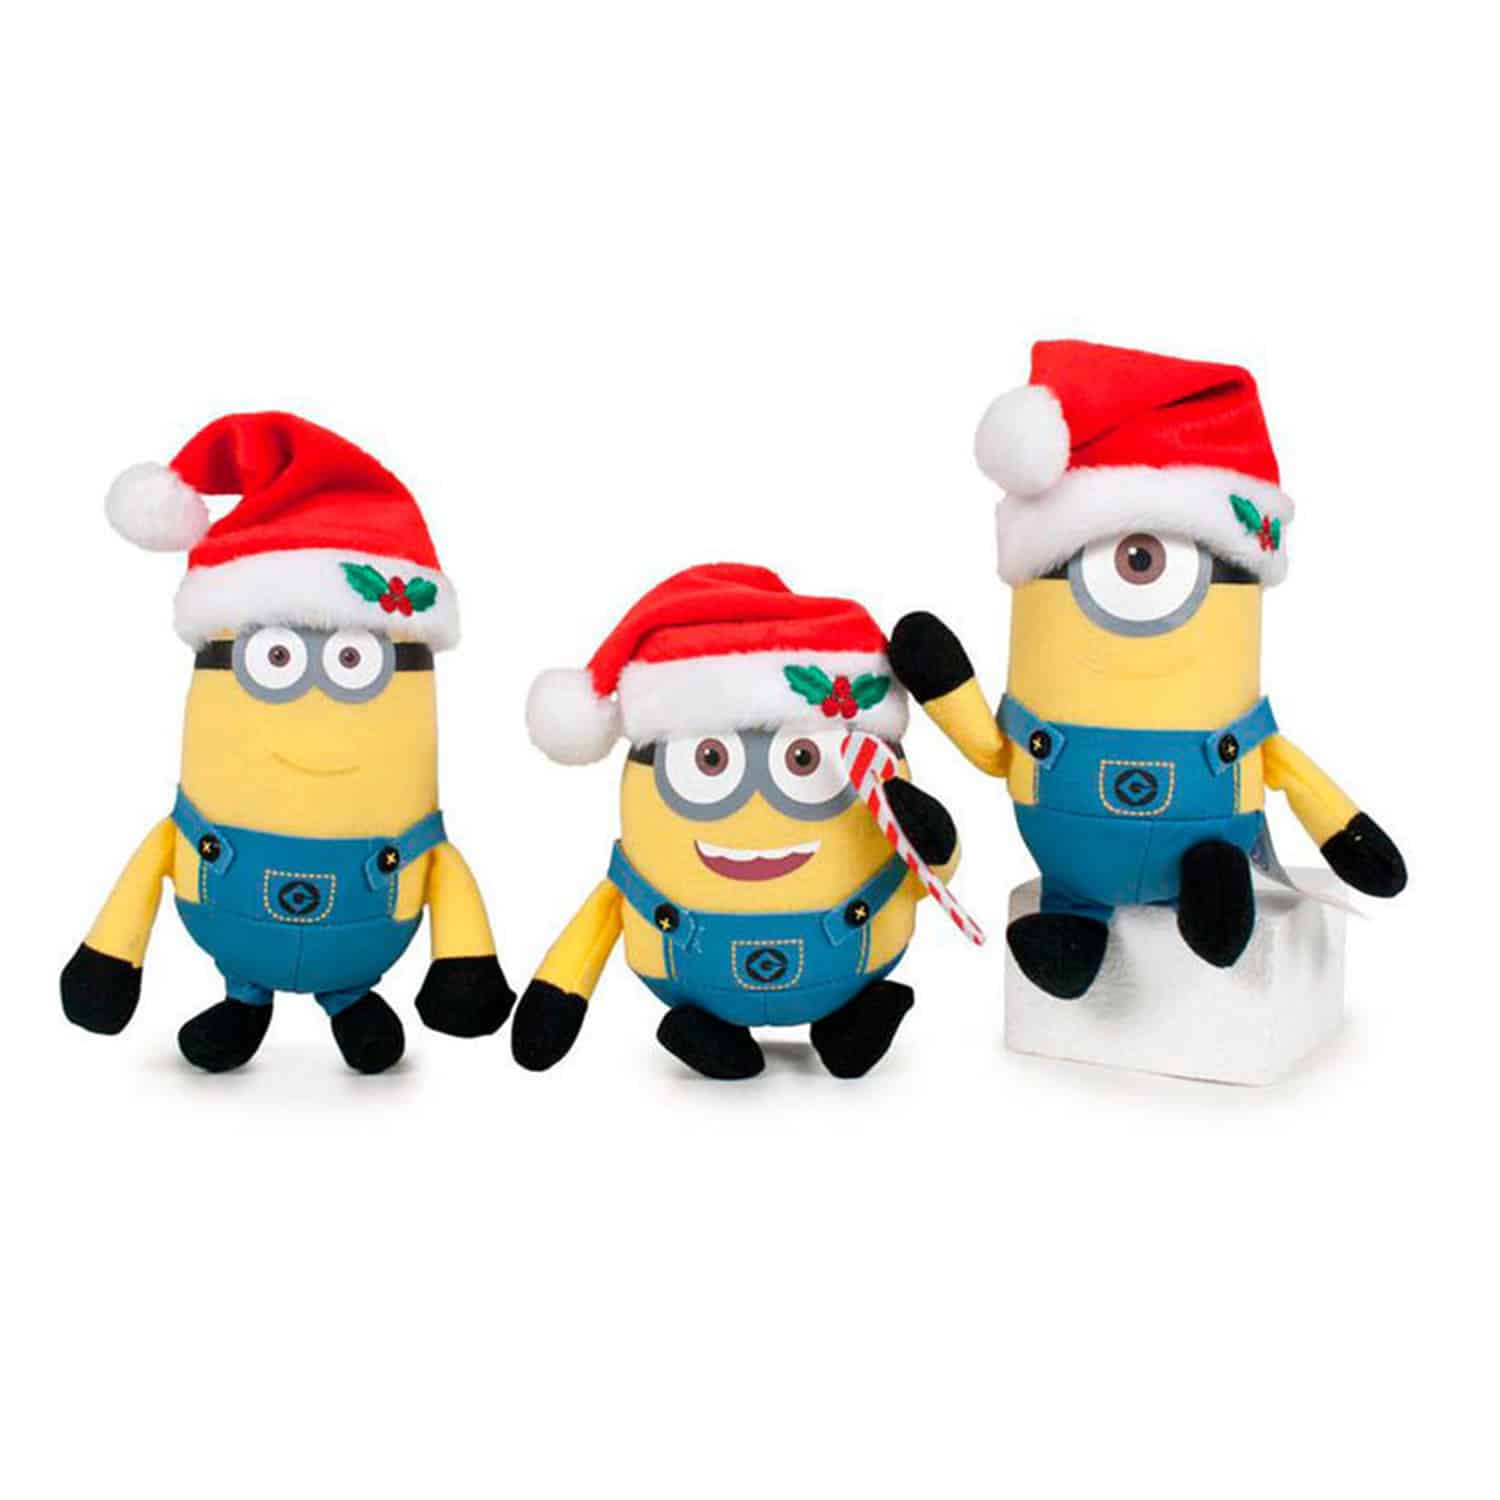 Minions - Random Holiday Minion Keyring Plush